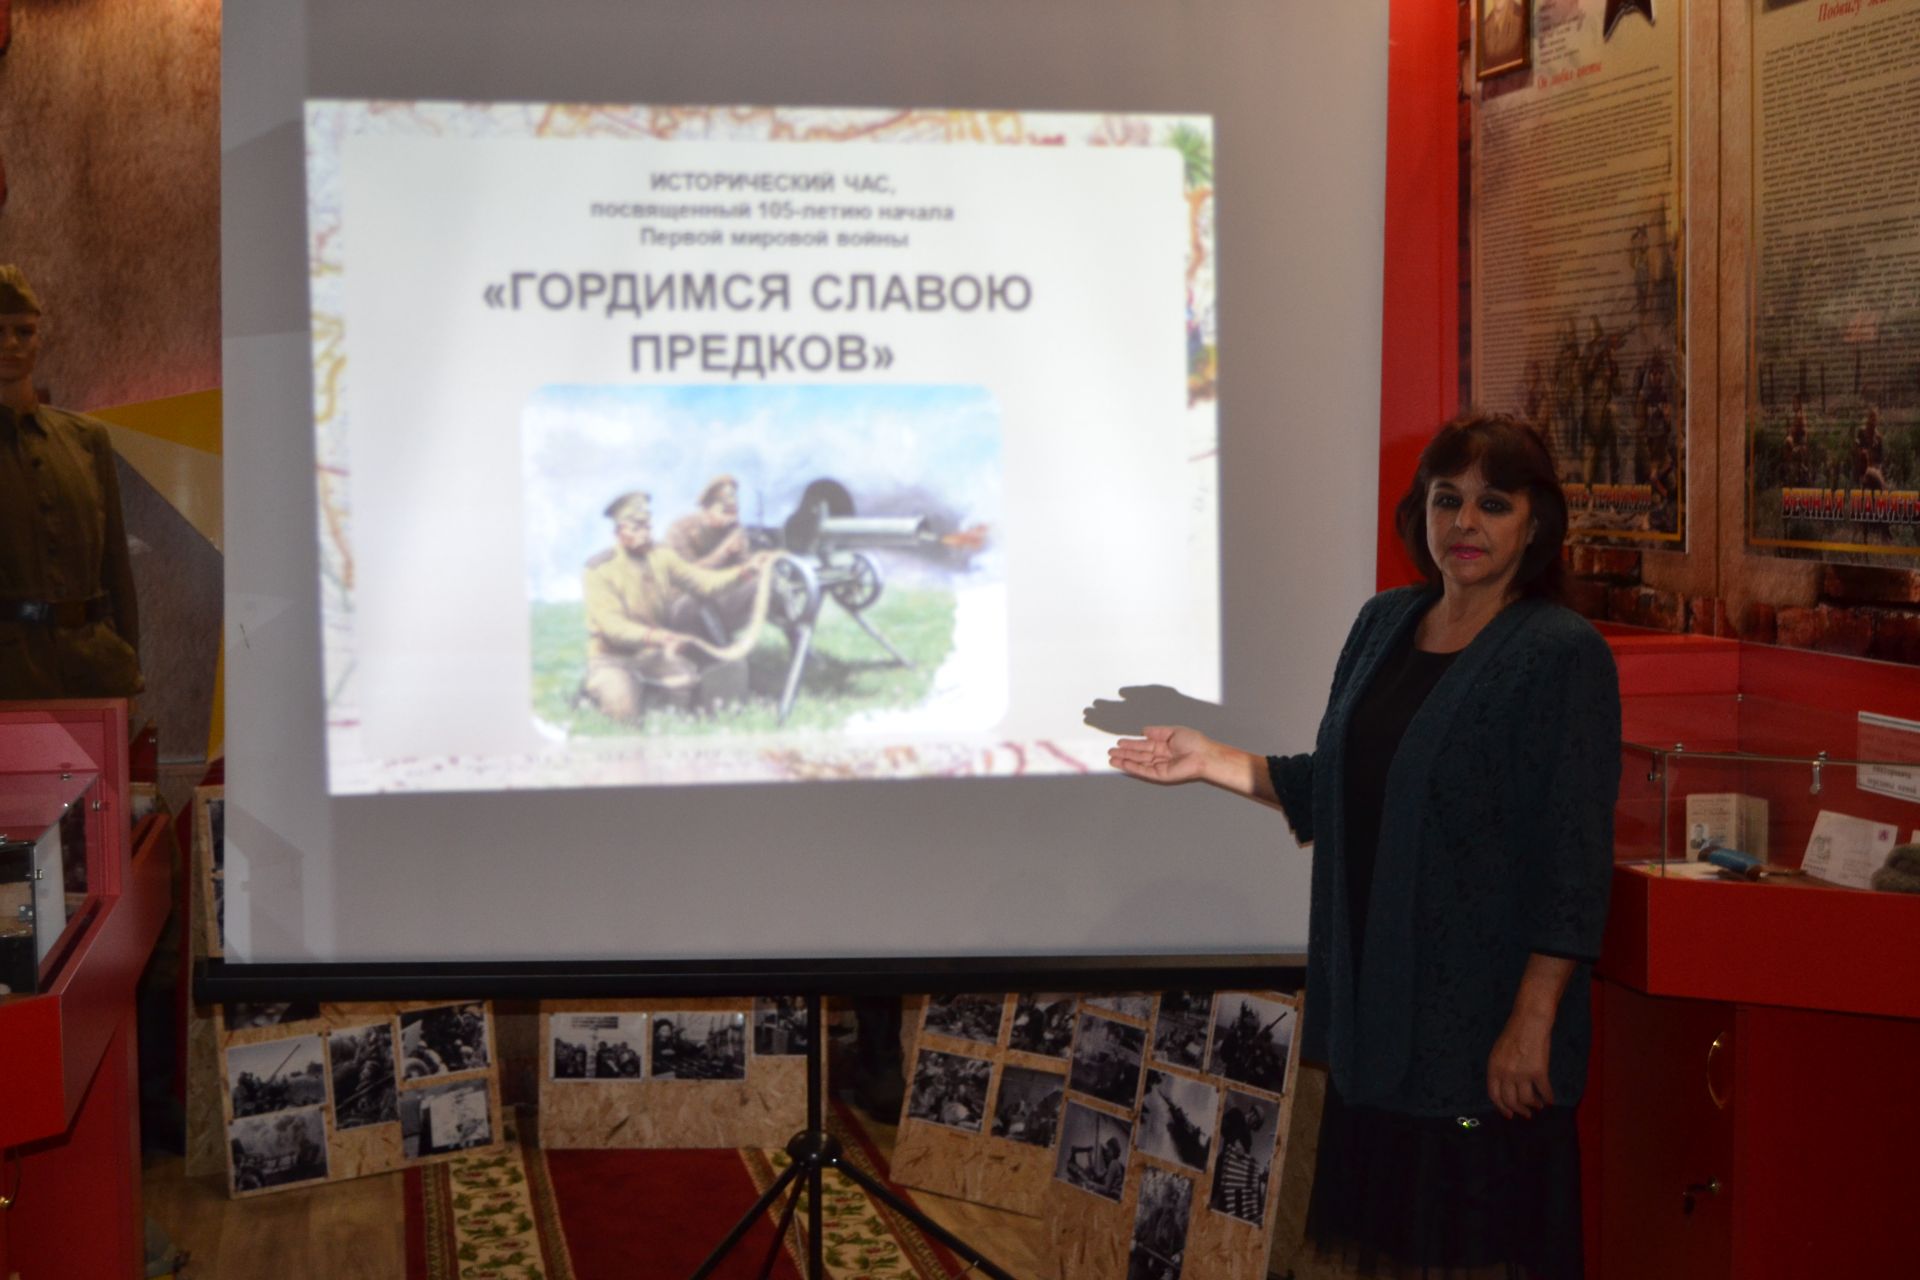 В селе Князево прошёл исторический час «Гордимся славою предков», посвященный  началу Первой мировой войны